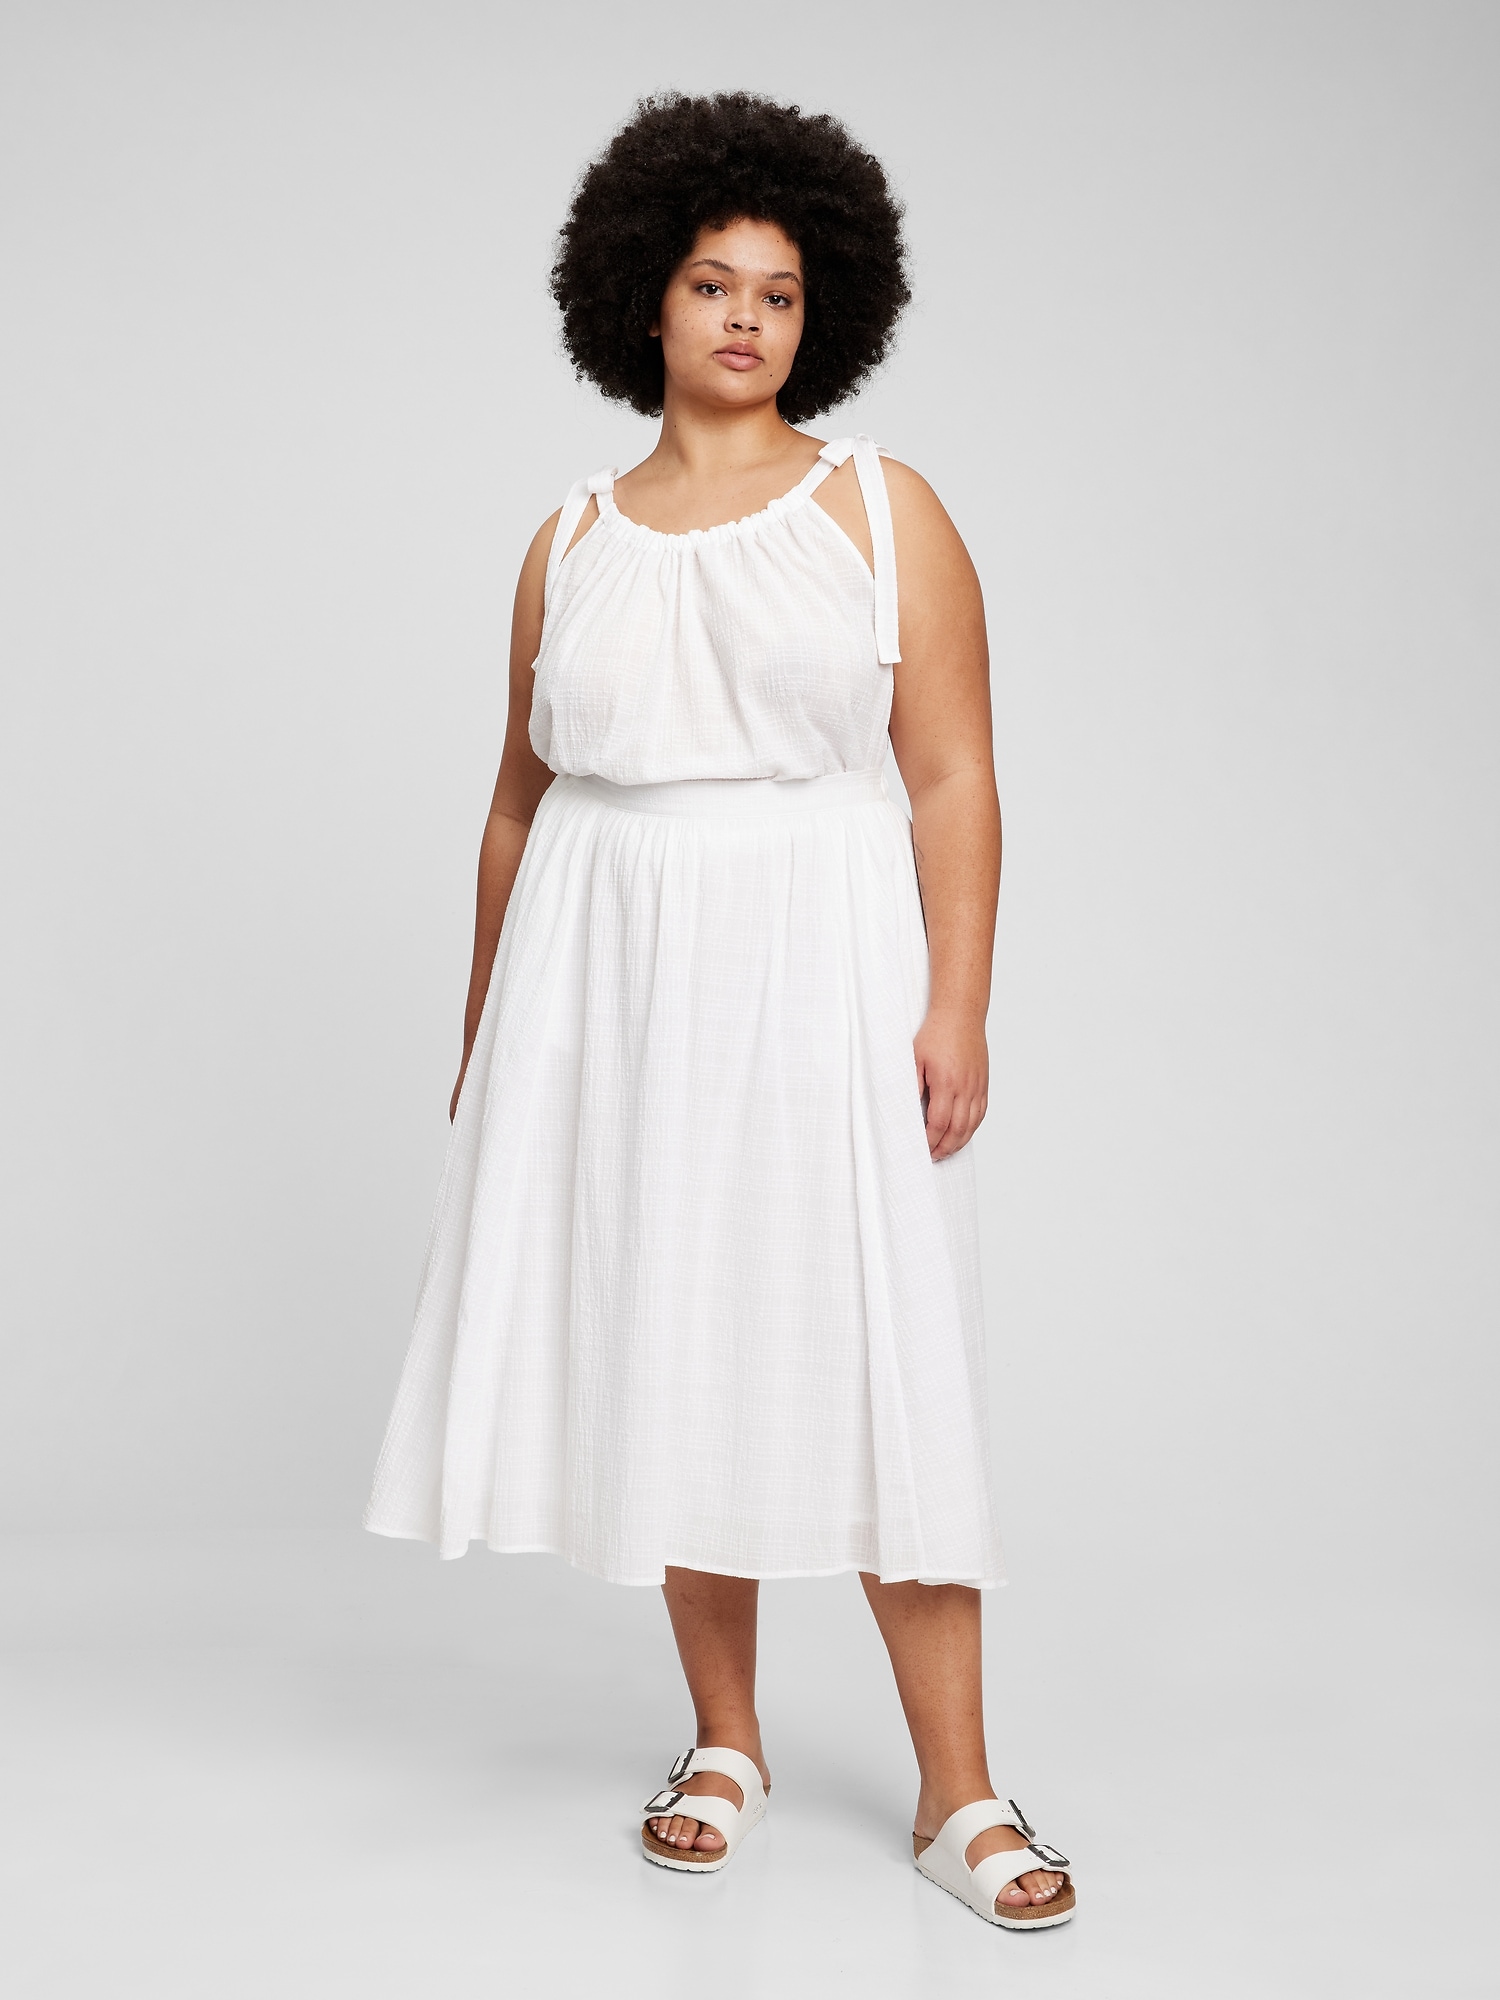 Layered Gauze Skirt - White - BottomHalloween, Lookbook Store